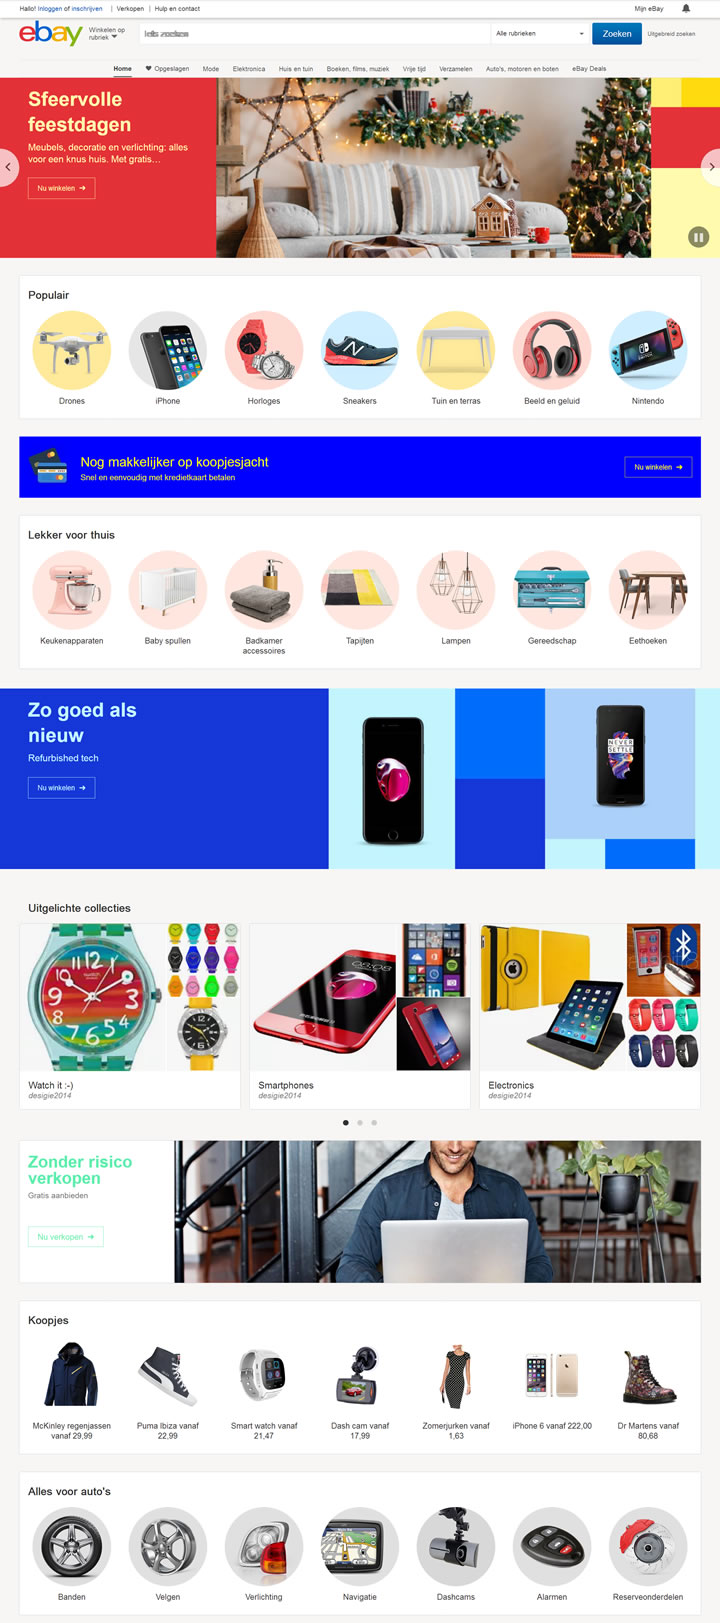 eBay荷兰购物网站